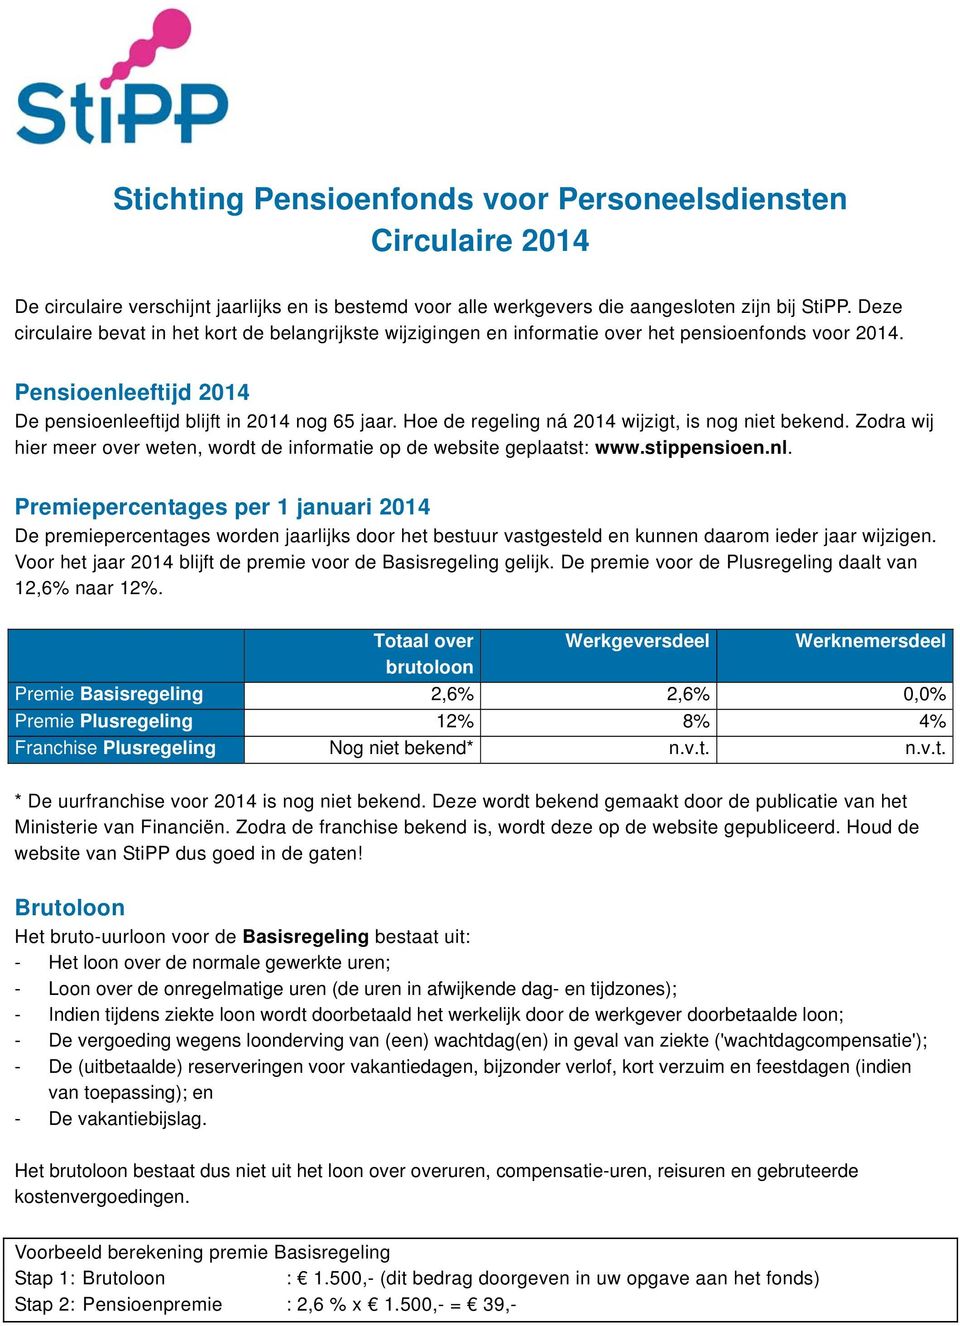 Hoe de regeling ná 2014 wijzigt, is nog niet bekend. Zodra wij hier meer over weten, wordt de informatie op de website geplaatst: www.stippensioen.nl.